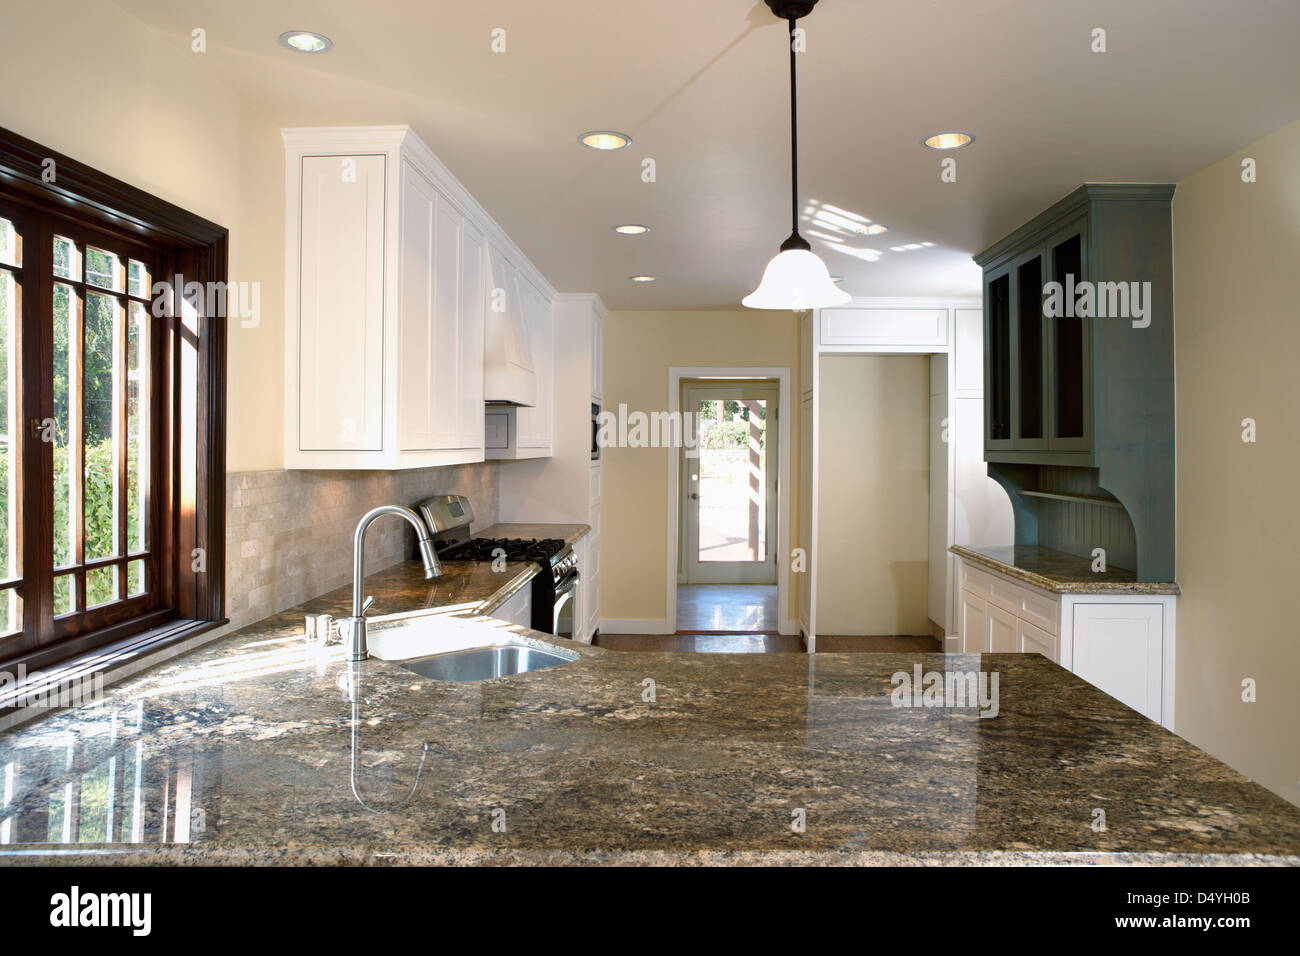 Les countertops de granit dans la cuisine traditionnelle, Pasadena, Californie, USA Banque D'Images